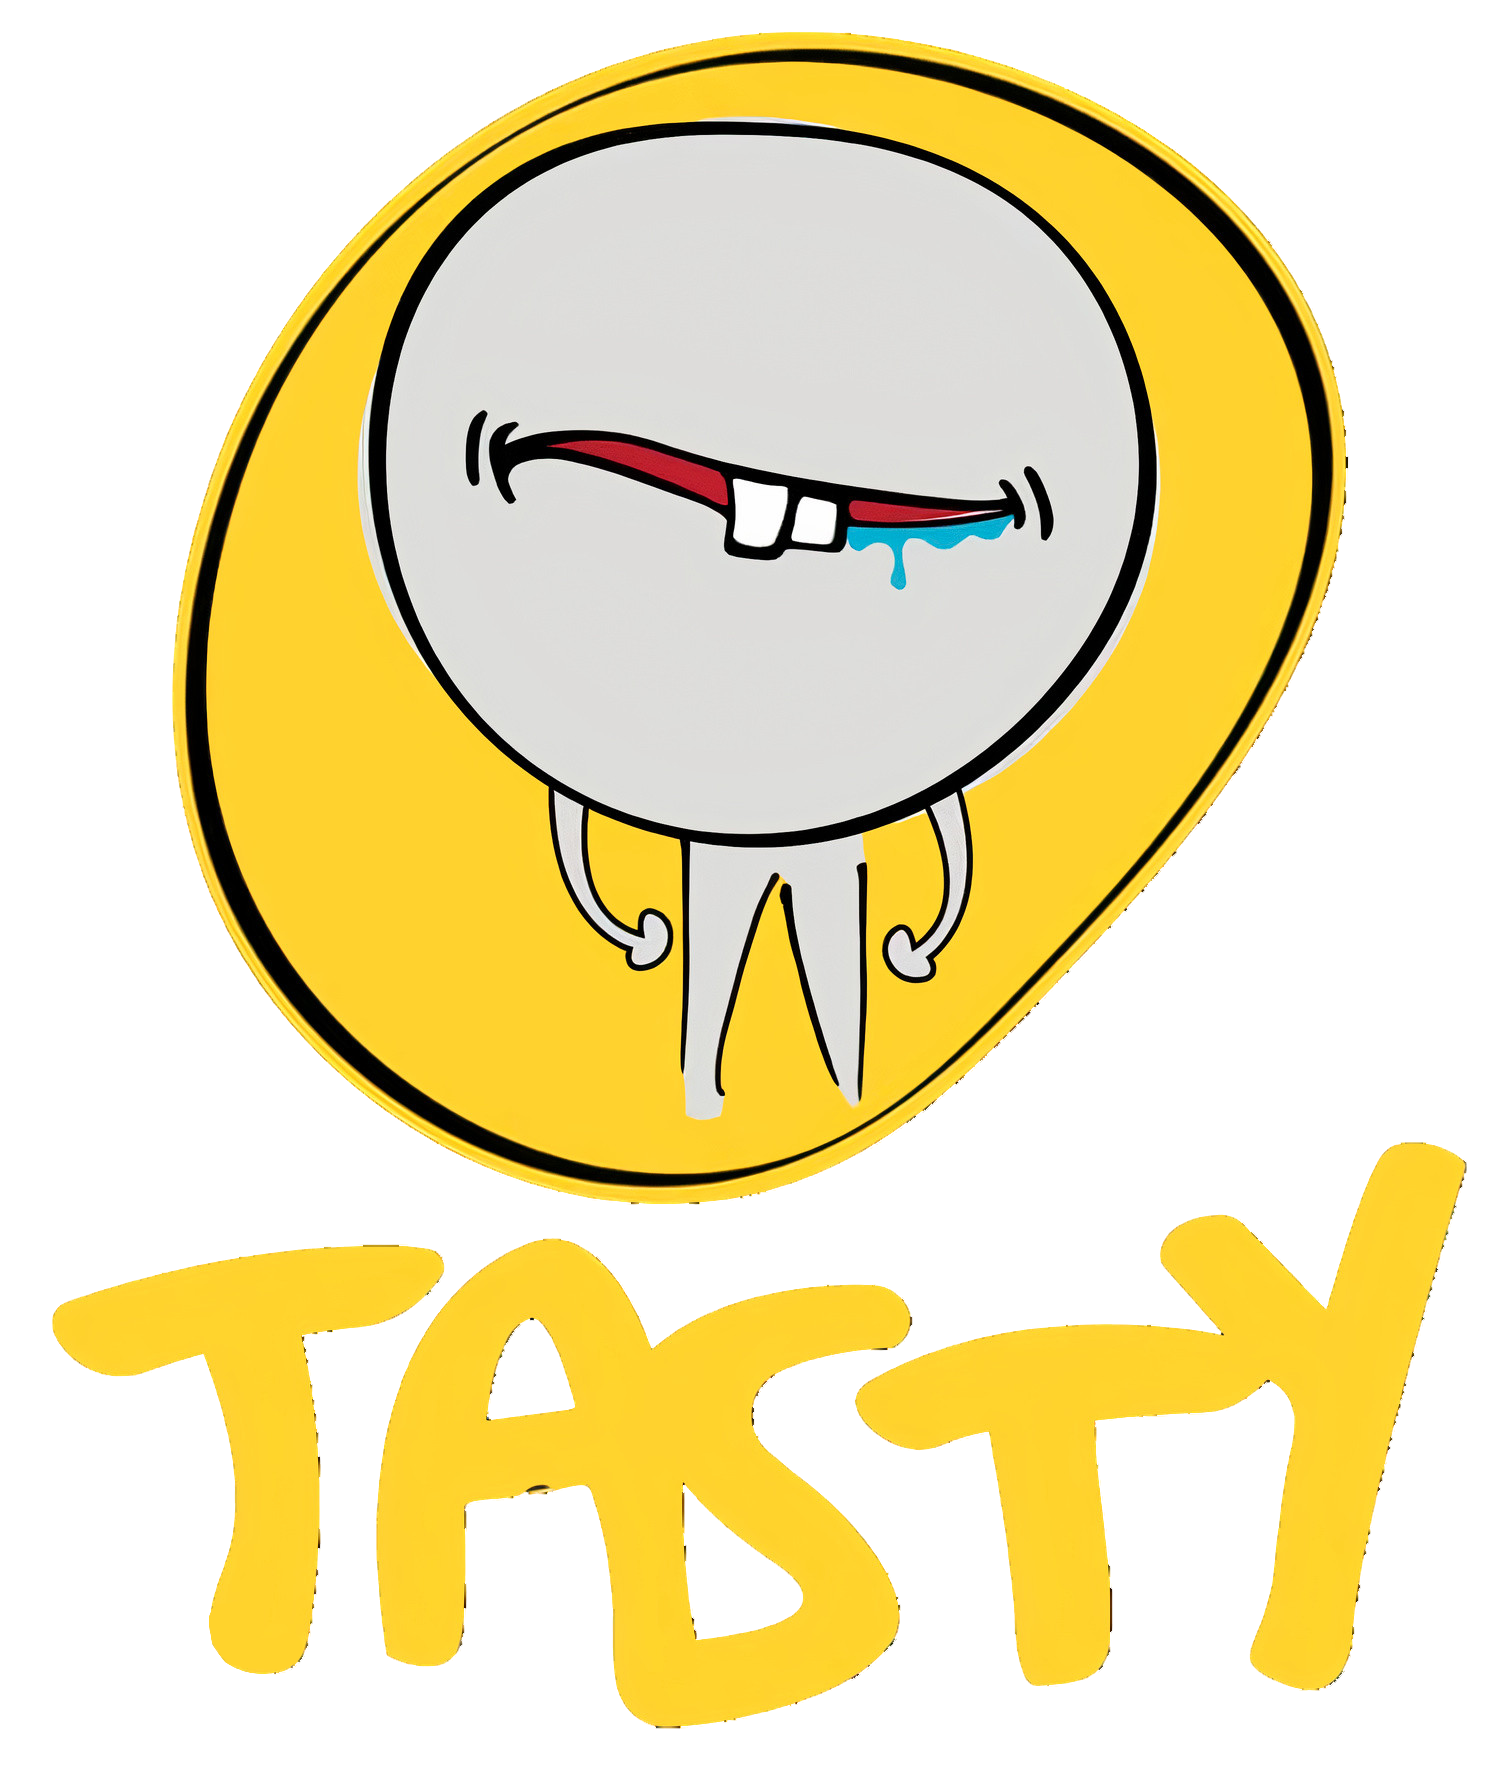 Tasty Logo